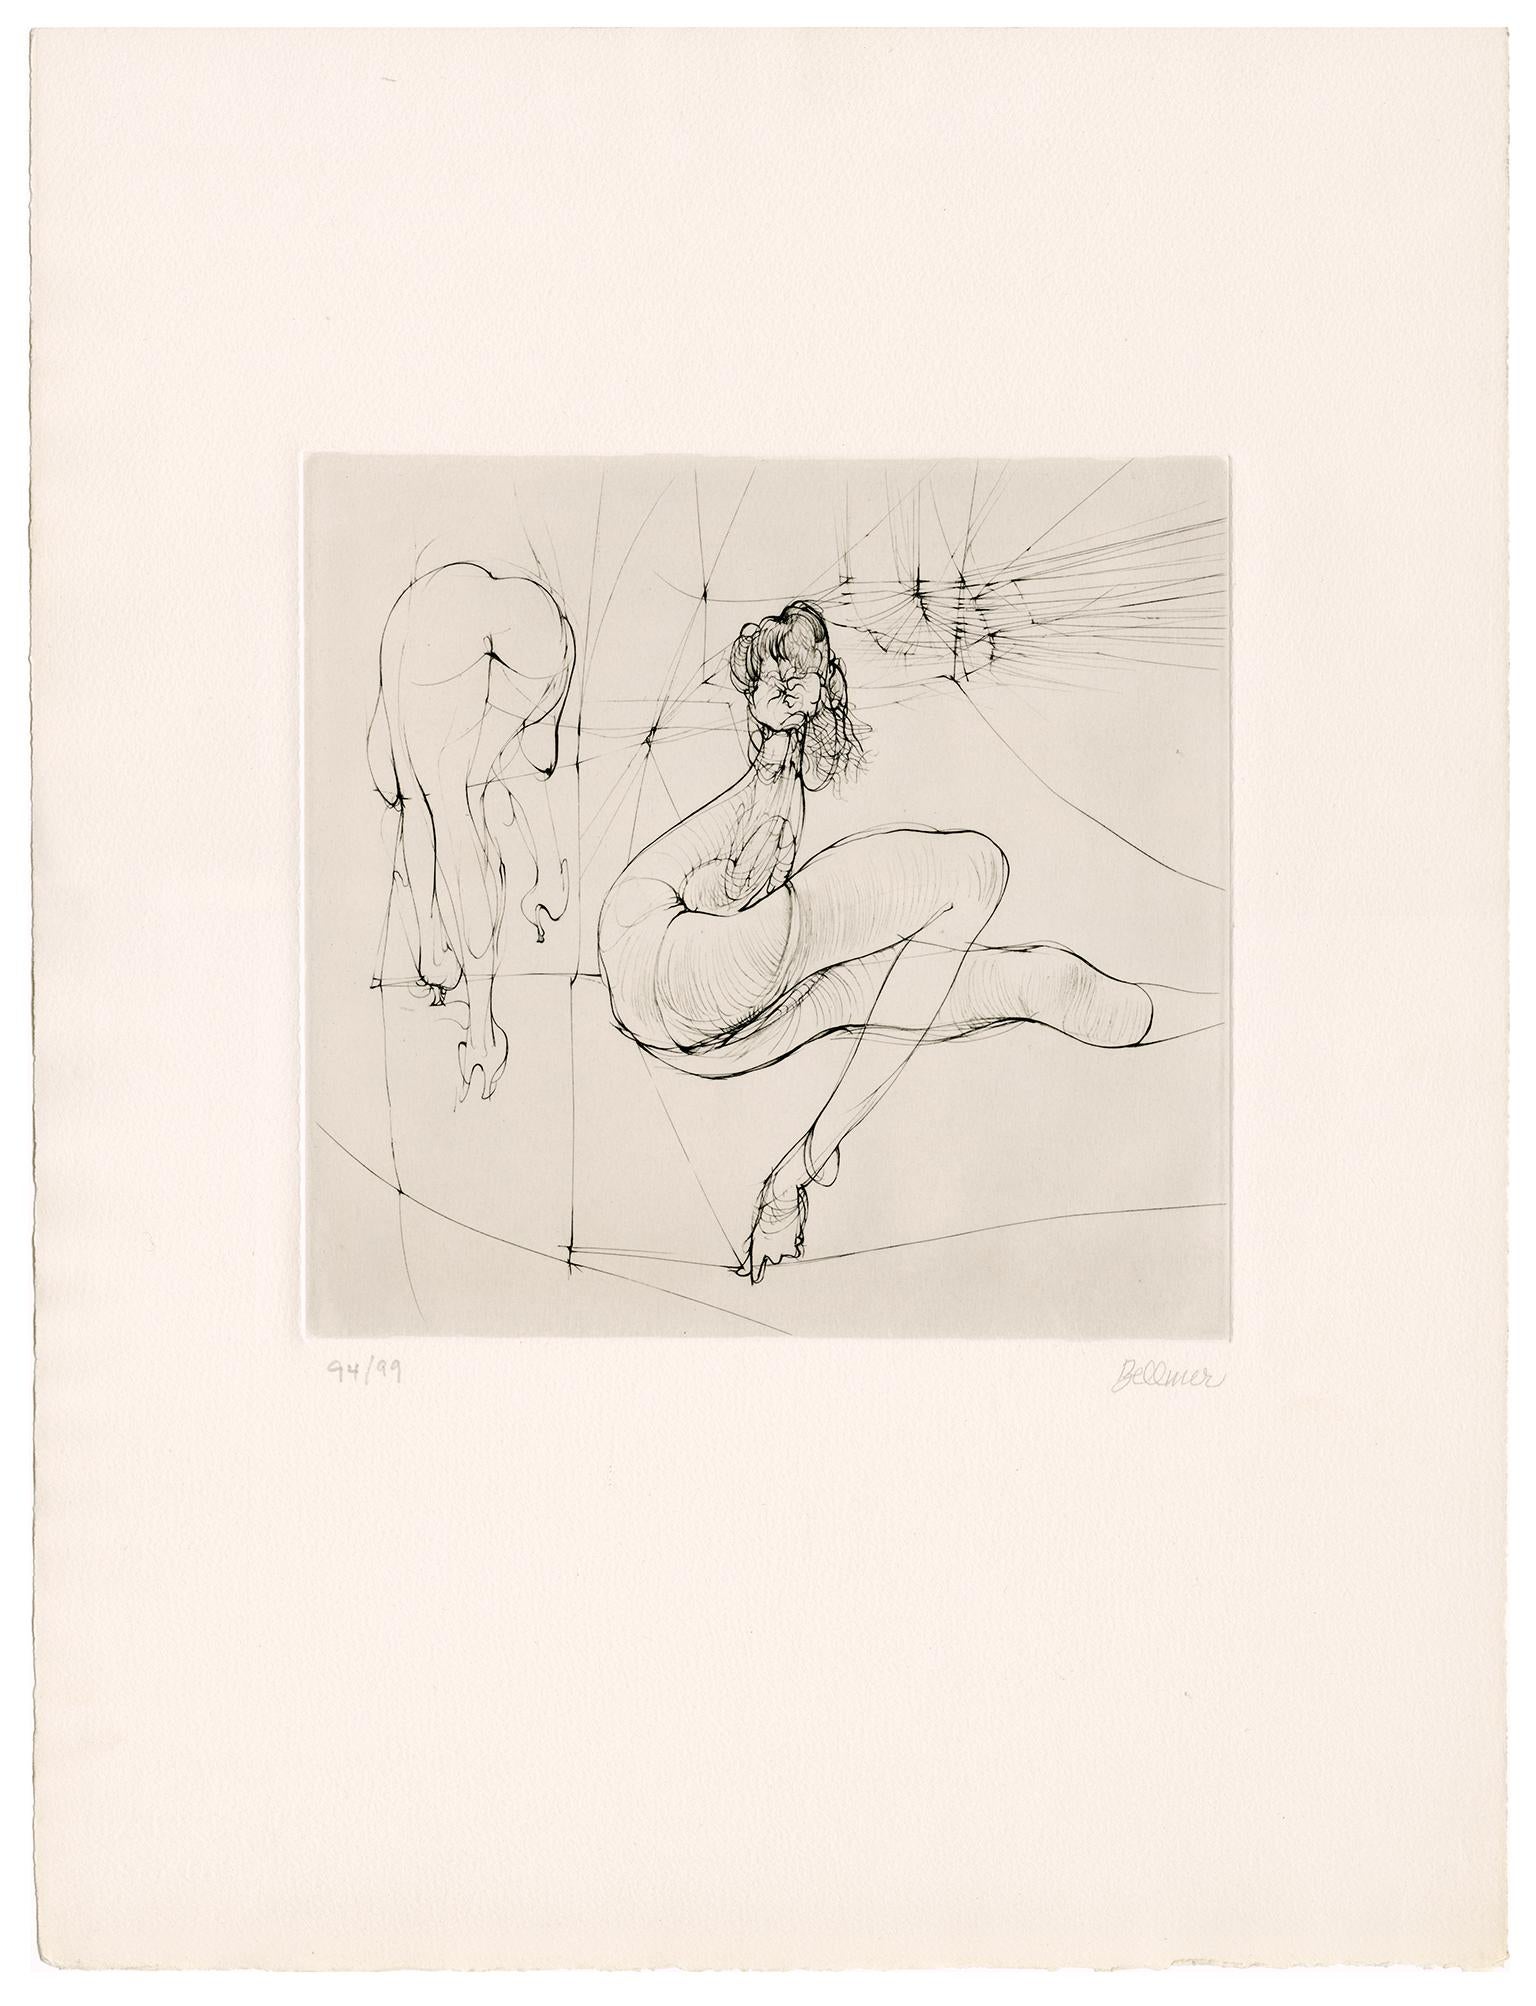 Sans titre  (Deux nus) - Surréalisme érotique des années 1970 - Print de Hans Bellmer